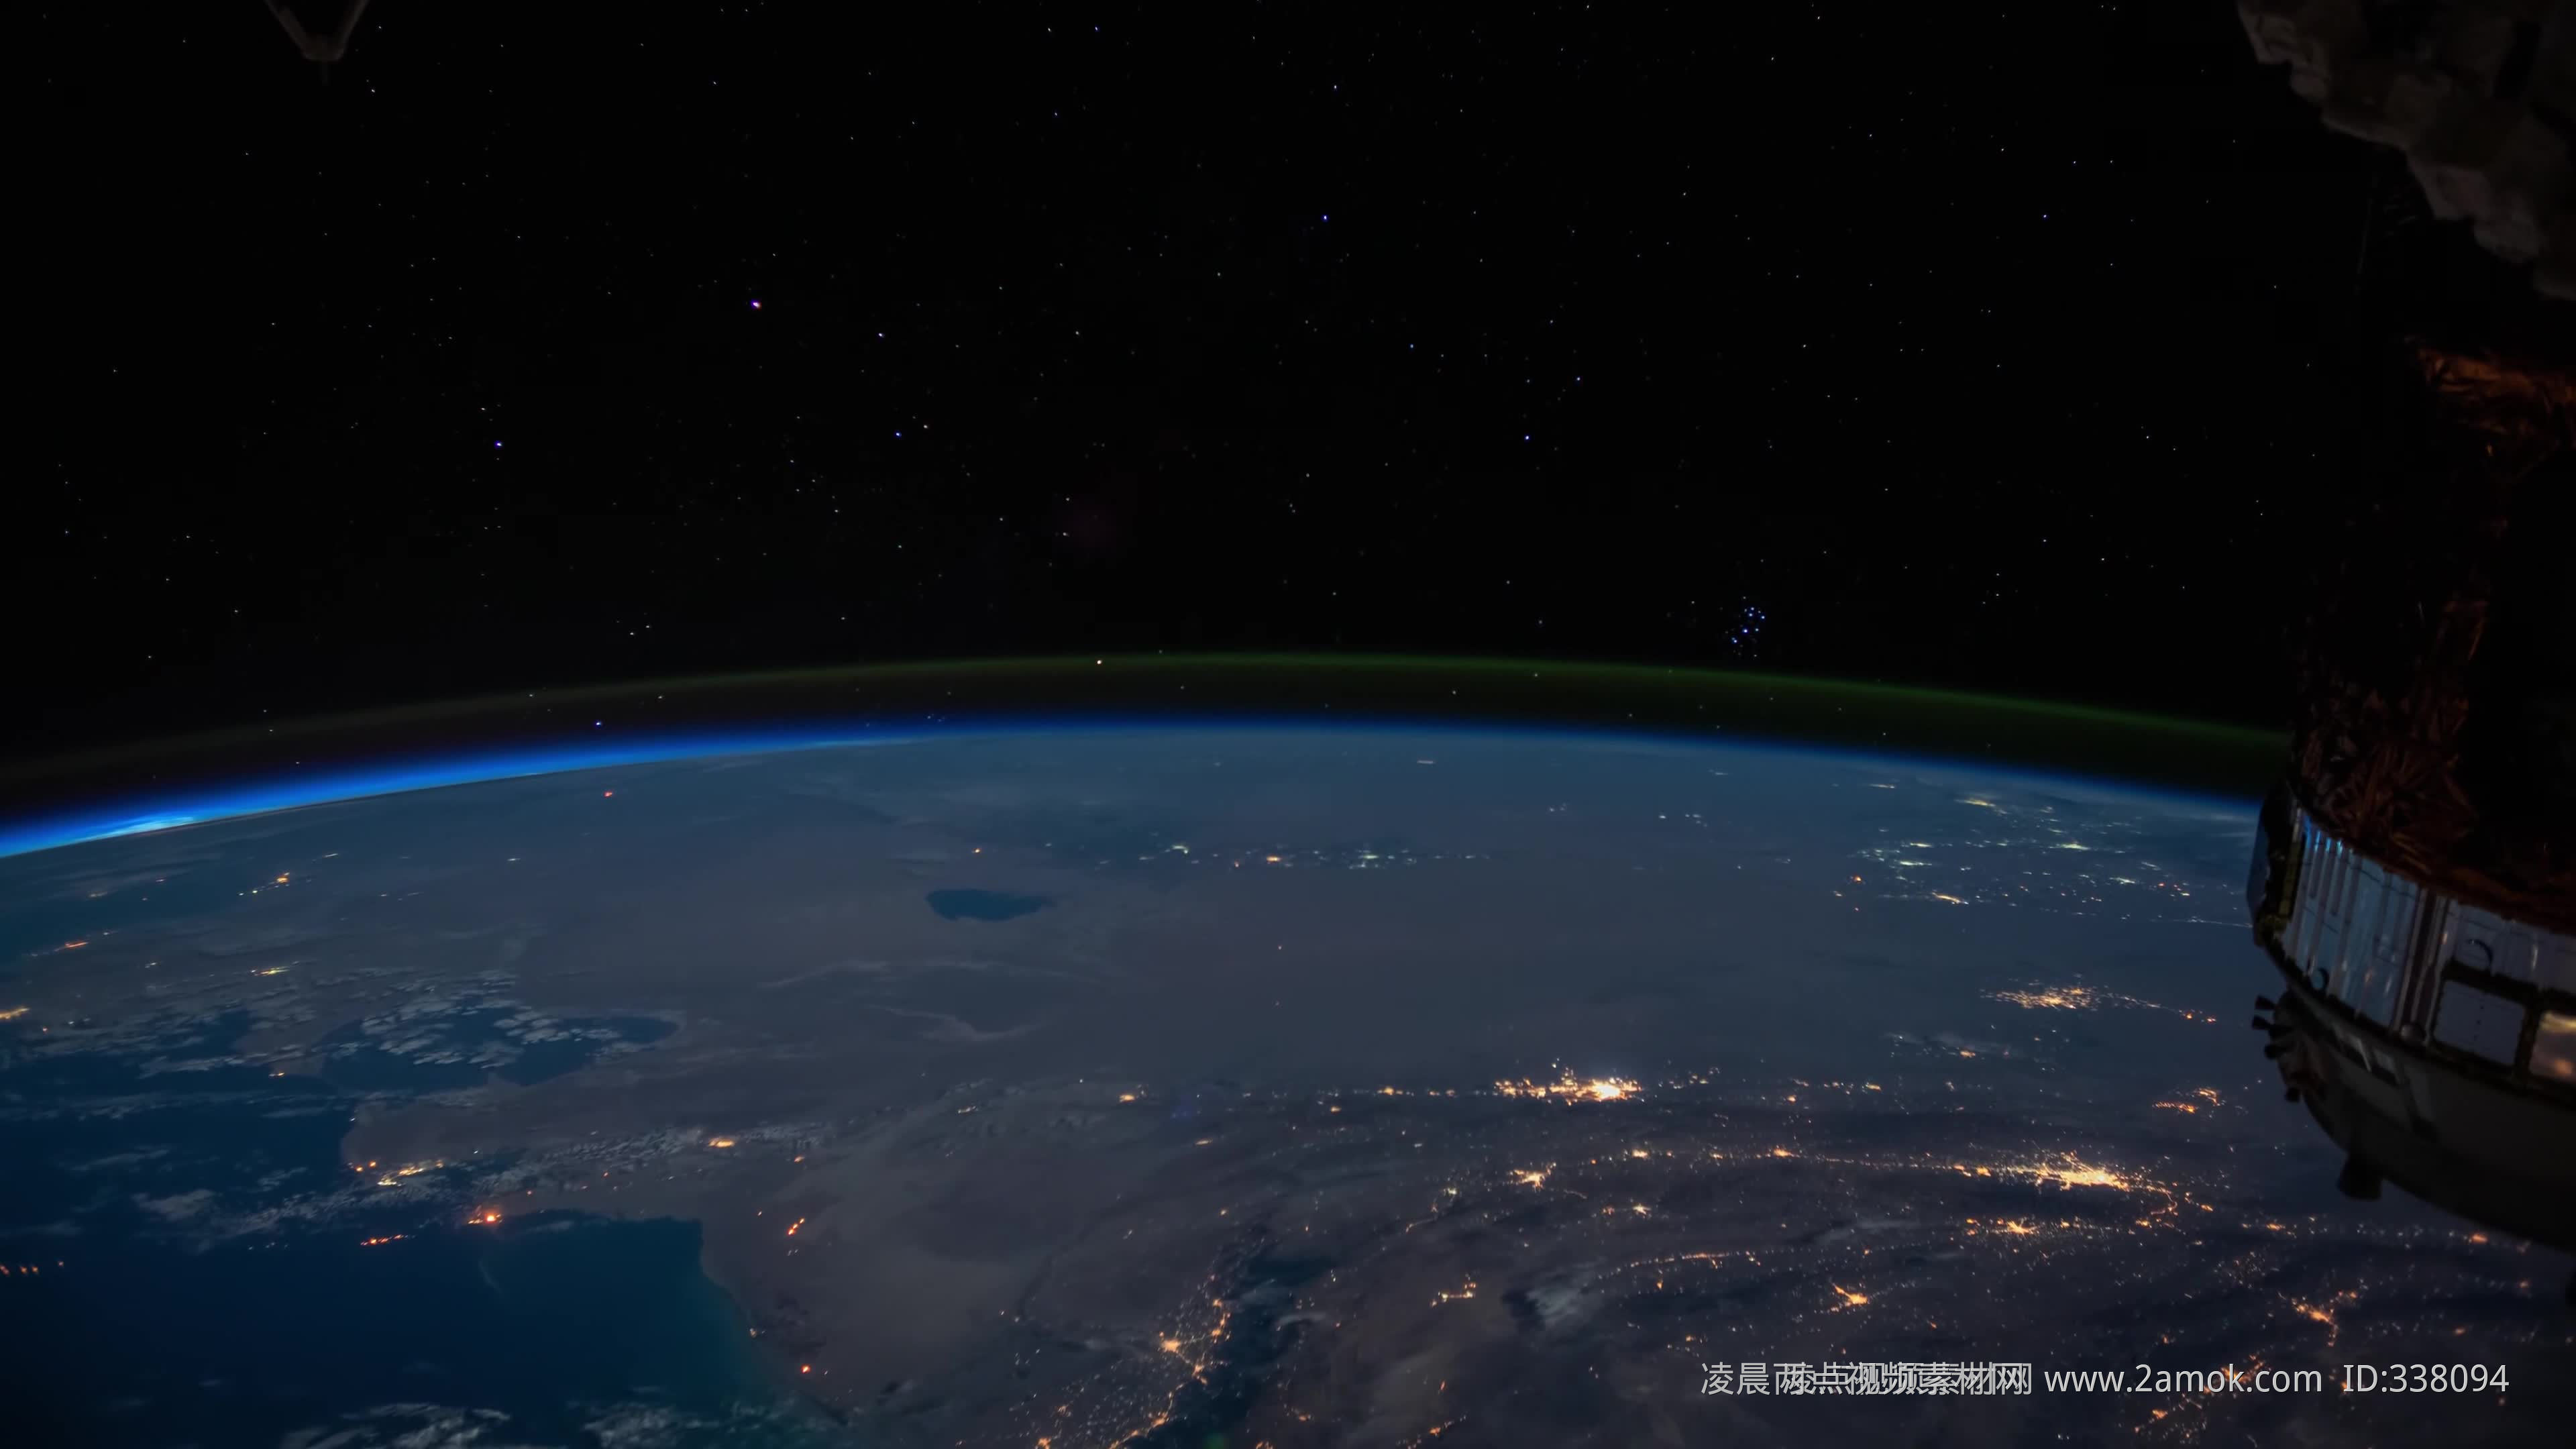 中国载人航天发布神十三航天员在轨拍摄地球美图-大象网